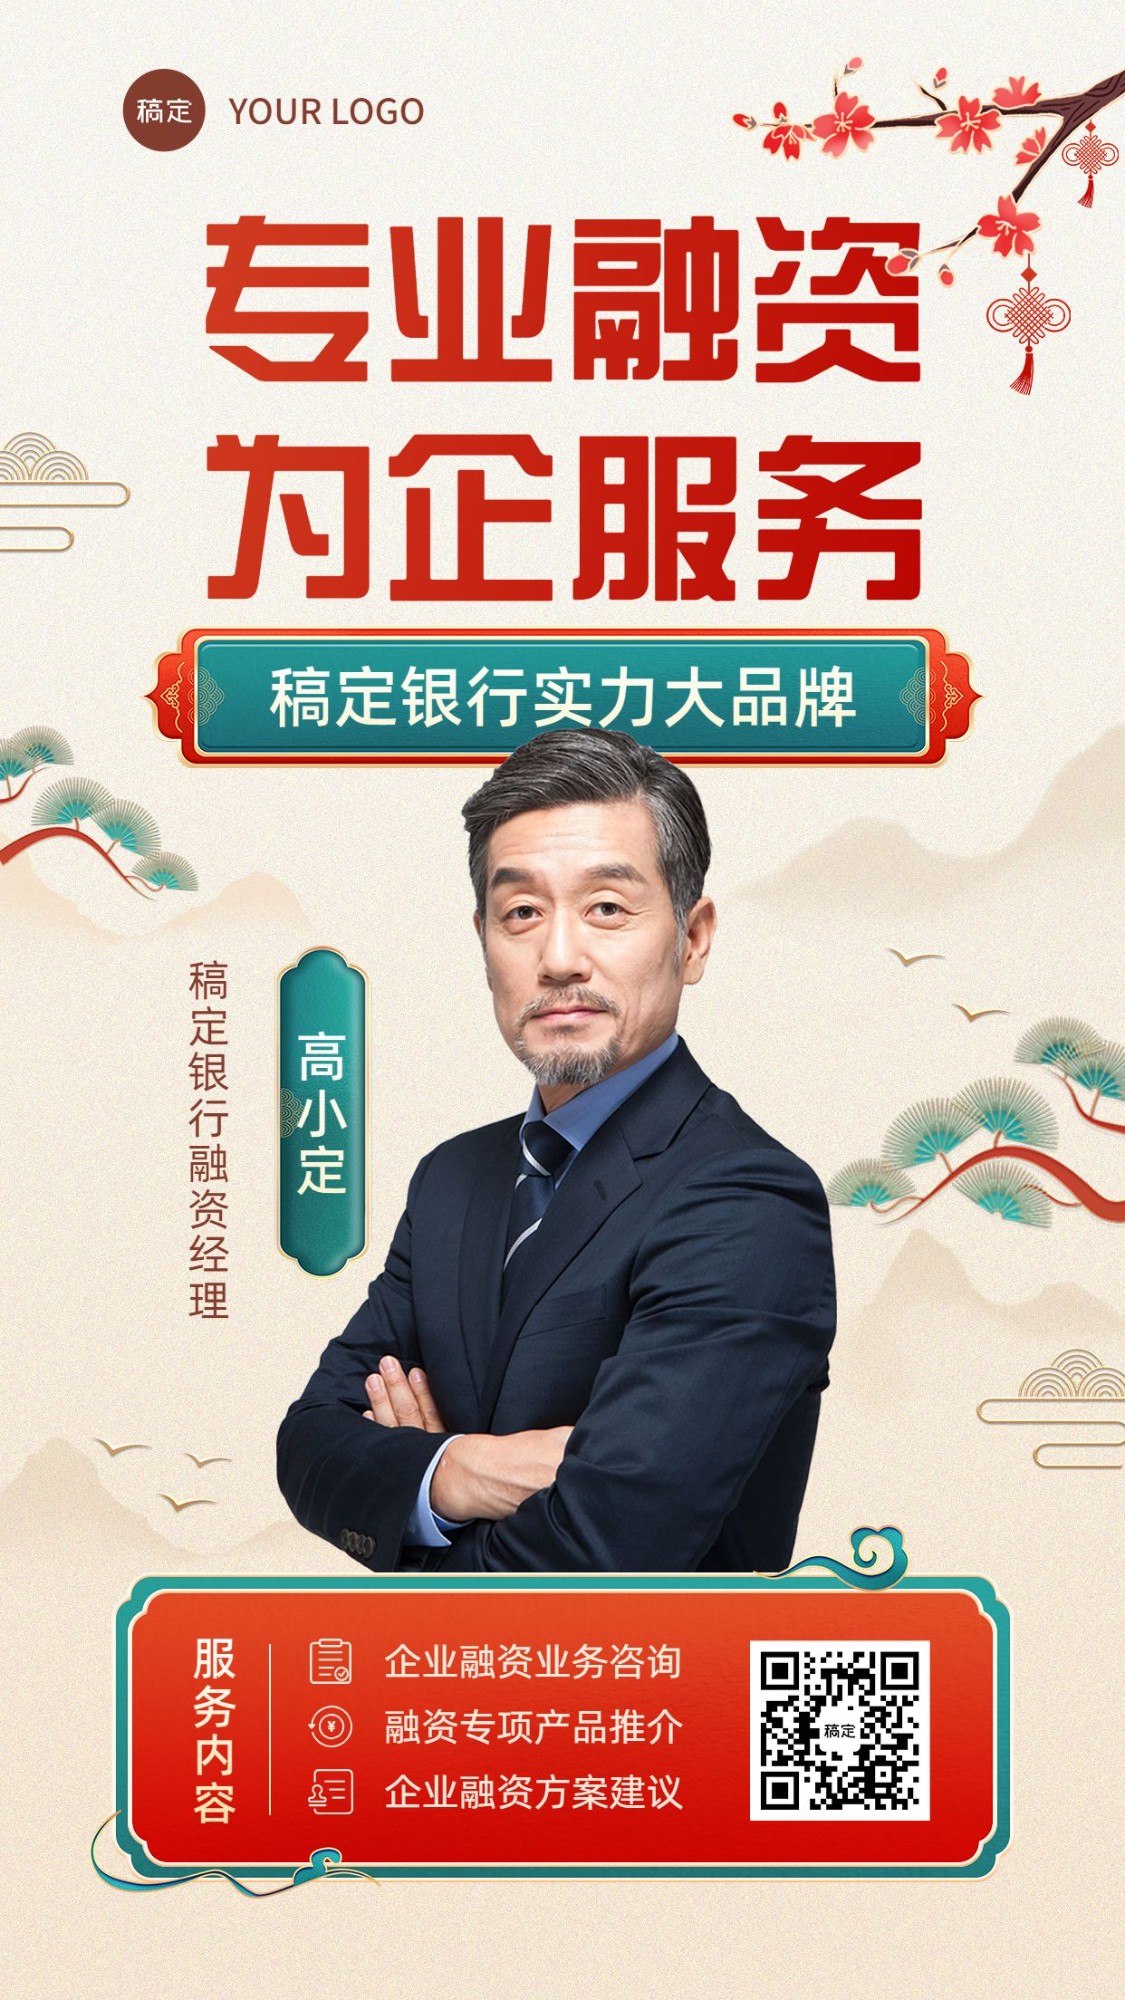 金融融资经理个人形象宣传业务介绍社交名片中国风手机海报套装预览效果